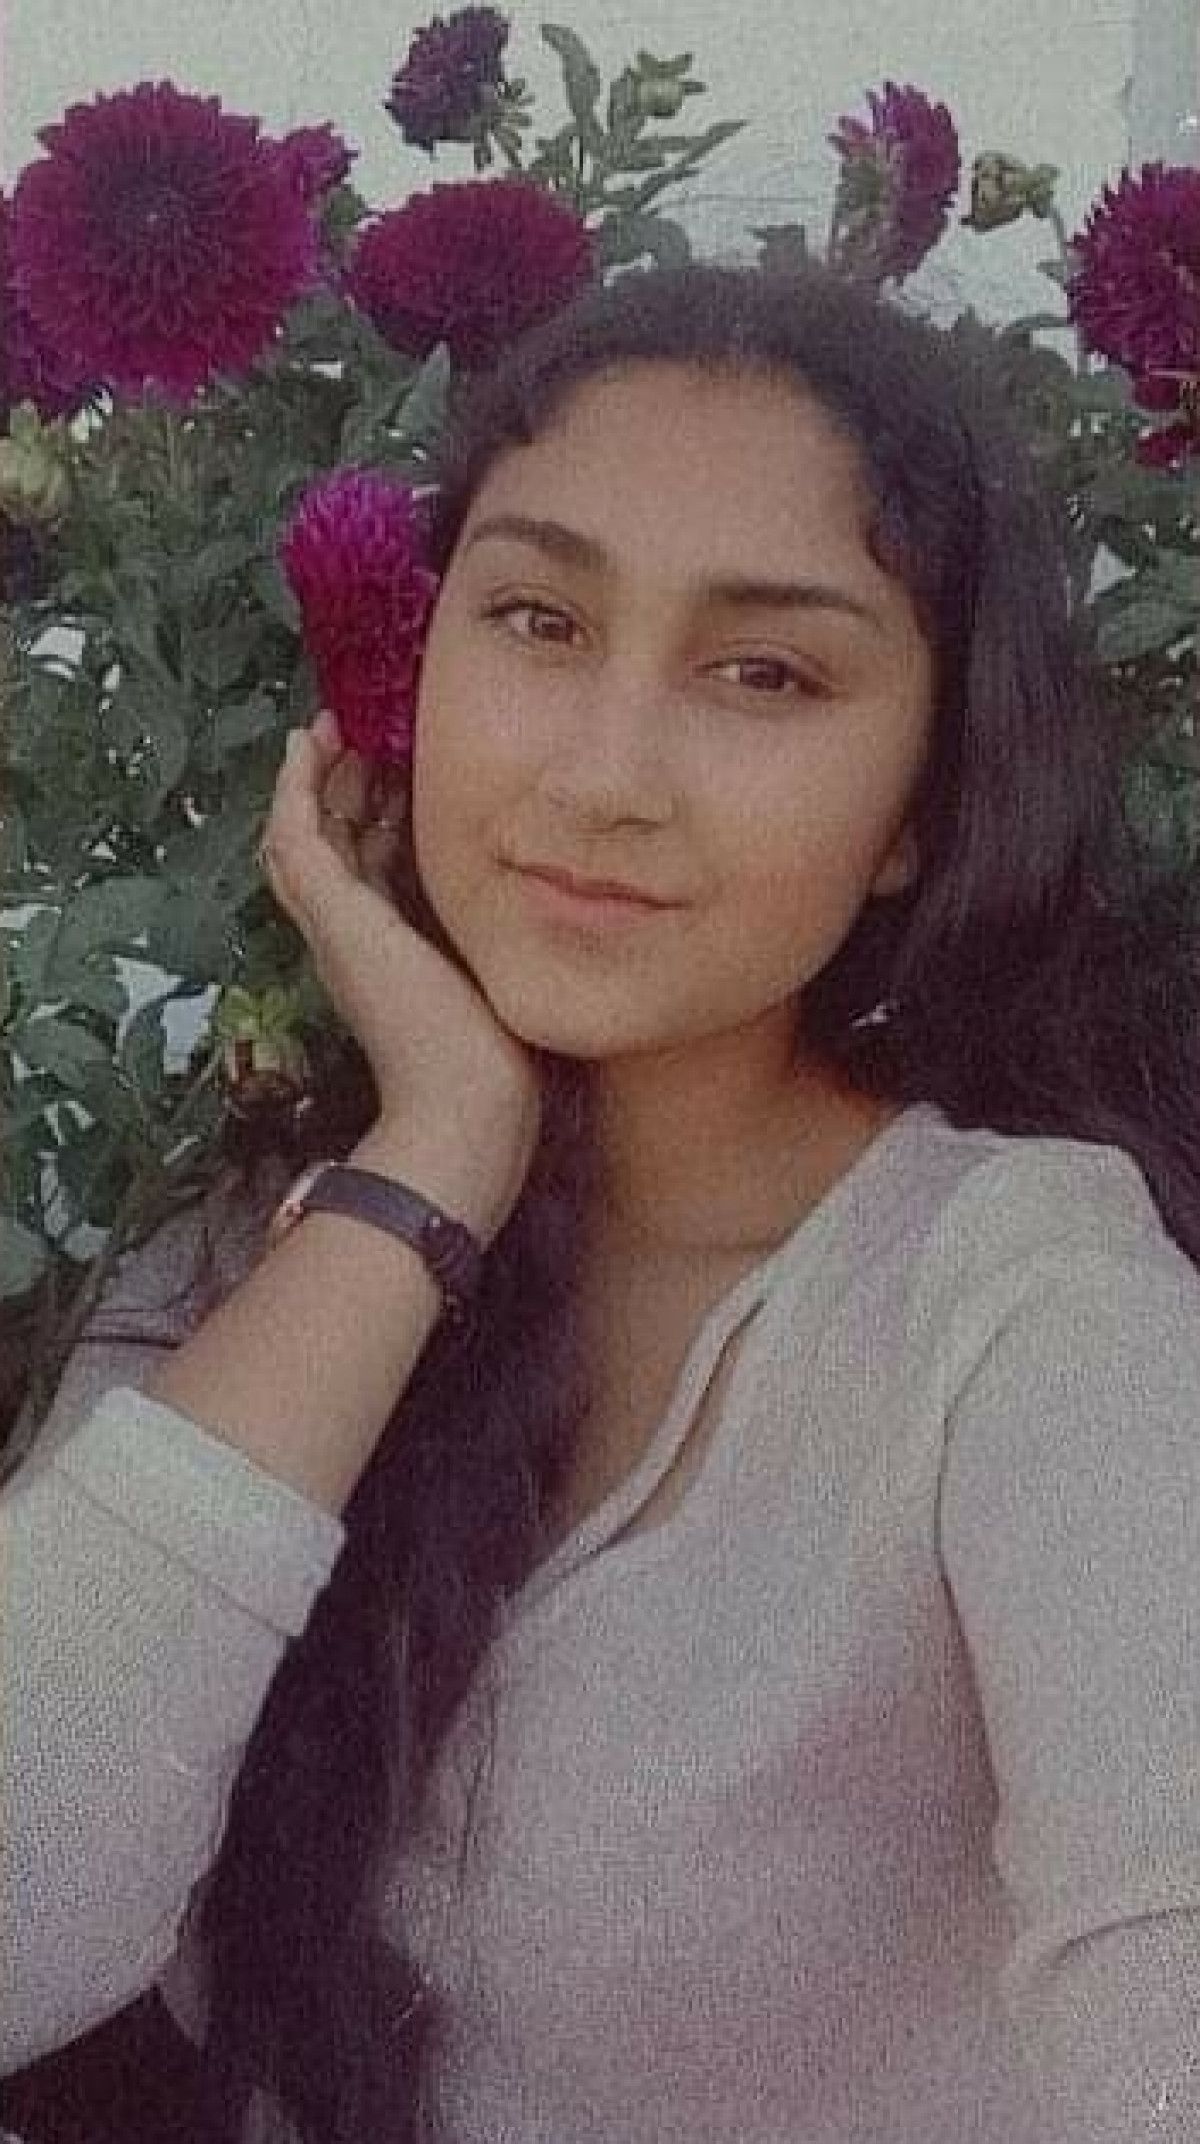 İzmir de lise öğrencisi 2 kız kayboldu, aileler jandarma önünde toplandı #10